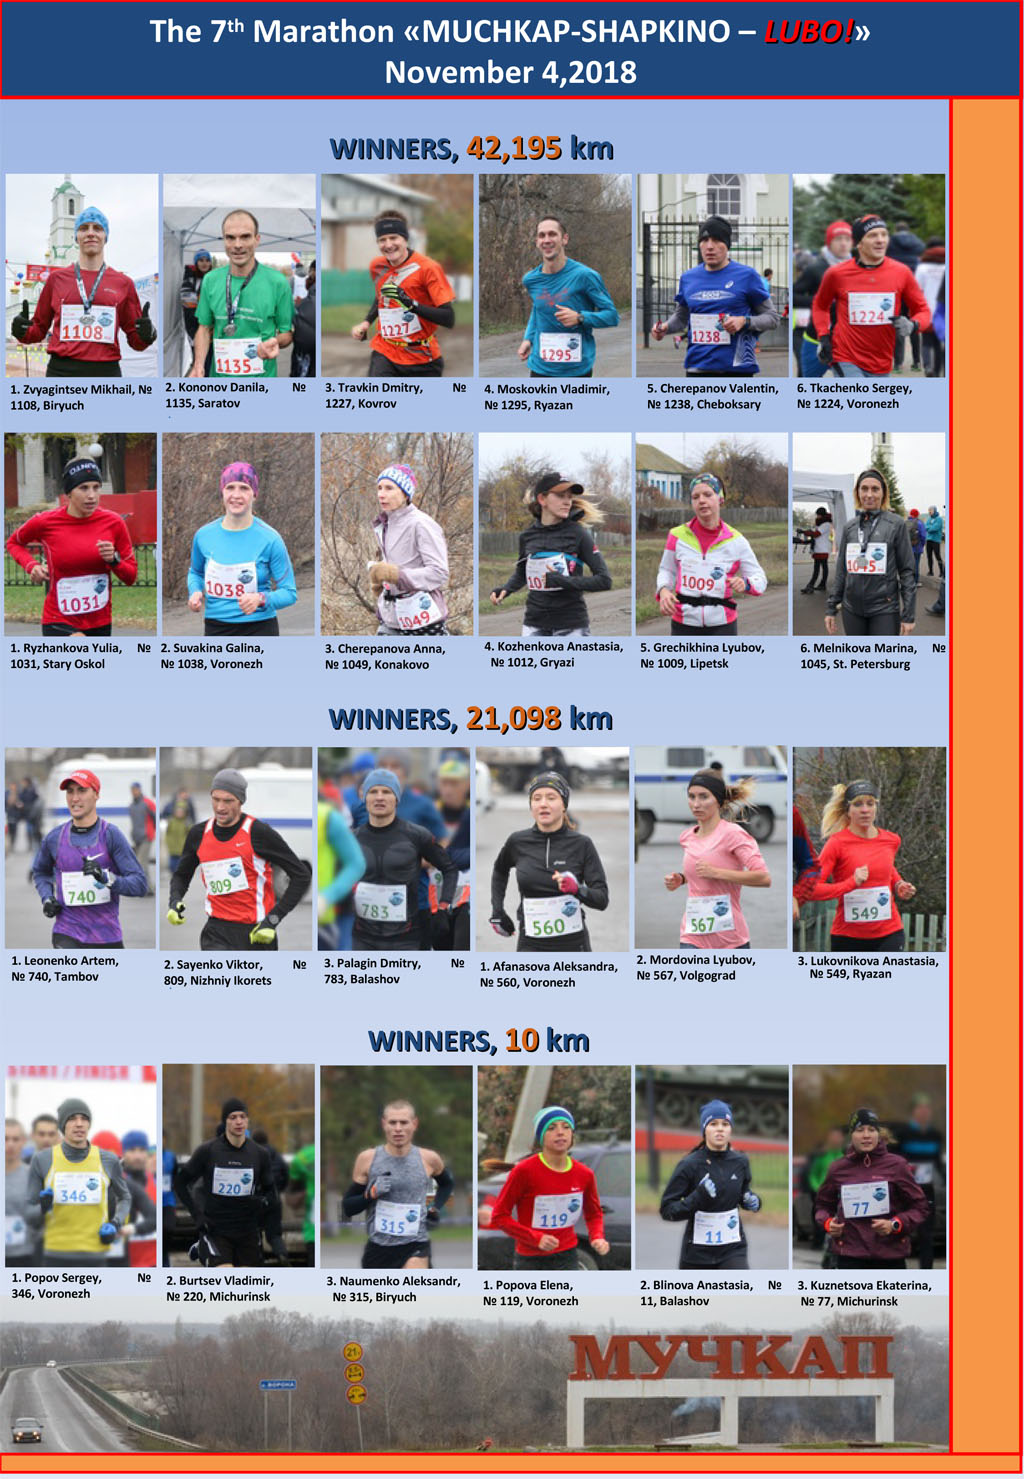 winners-7-marathon-Muchkap-Shapkino-Lubo-2018-en-2